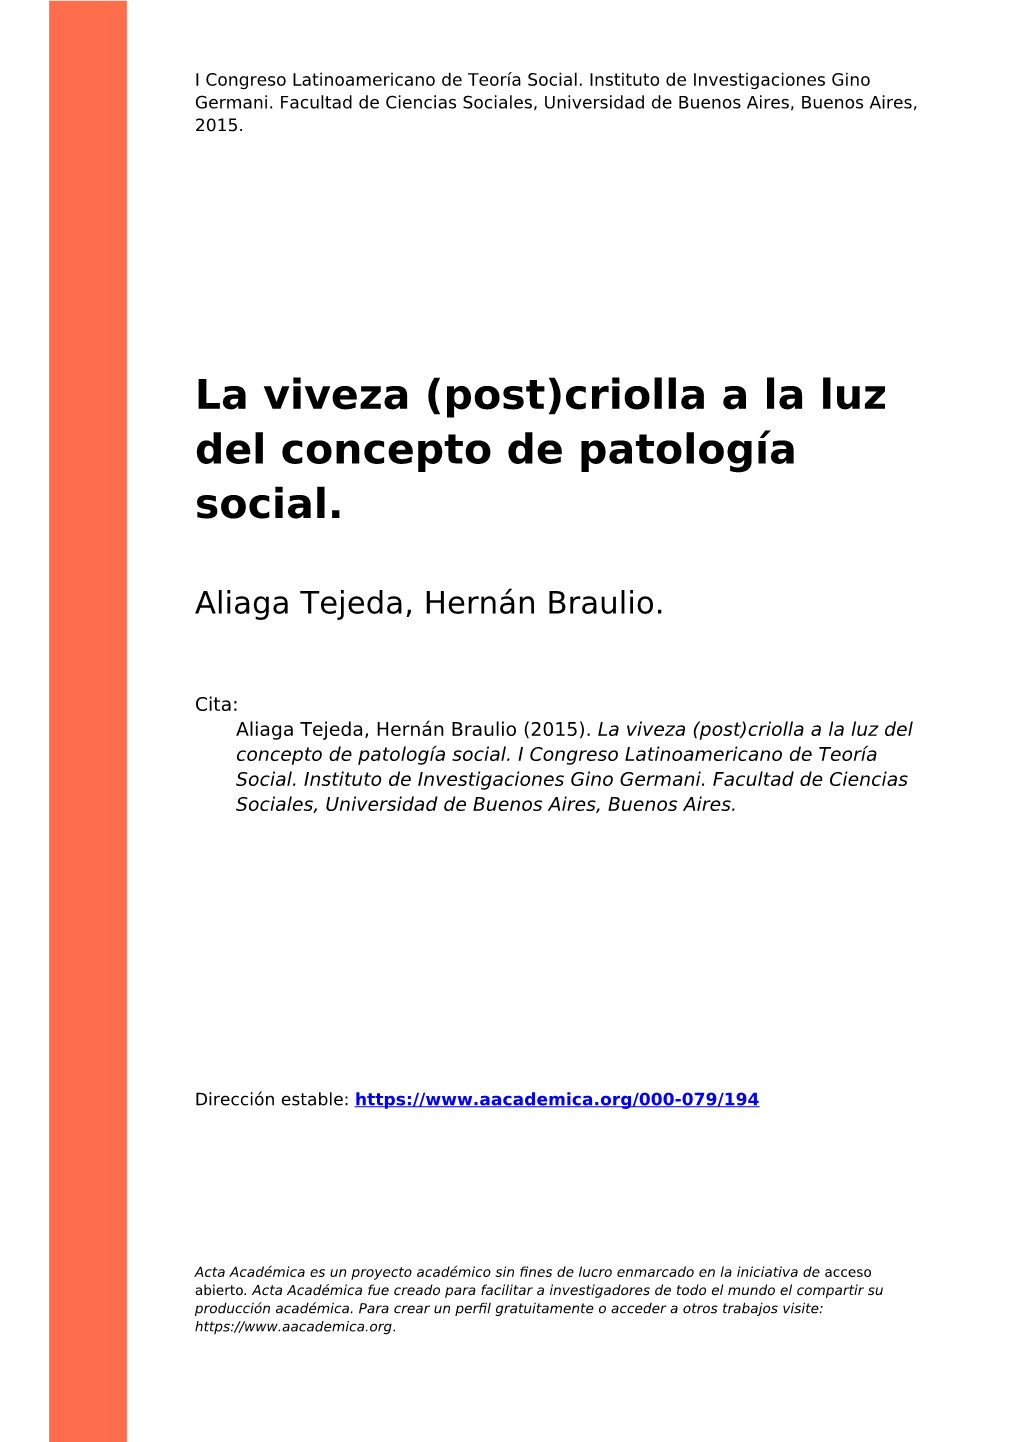 La Viveza (Post)Criolla a La Luz Del Concepto De Patología Social